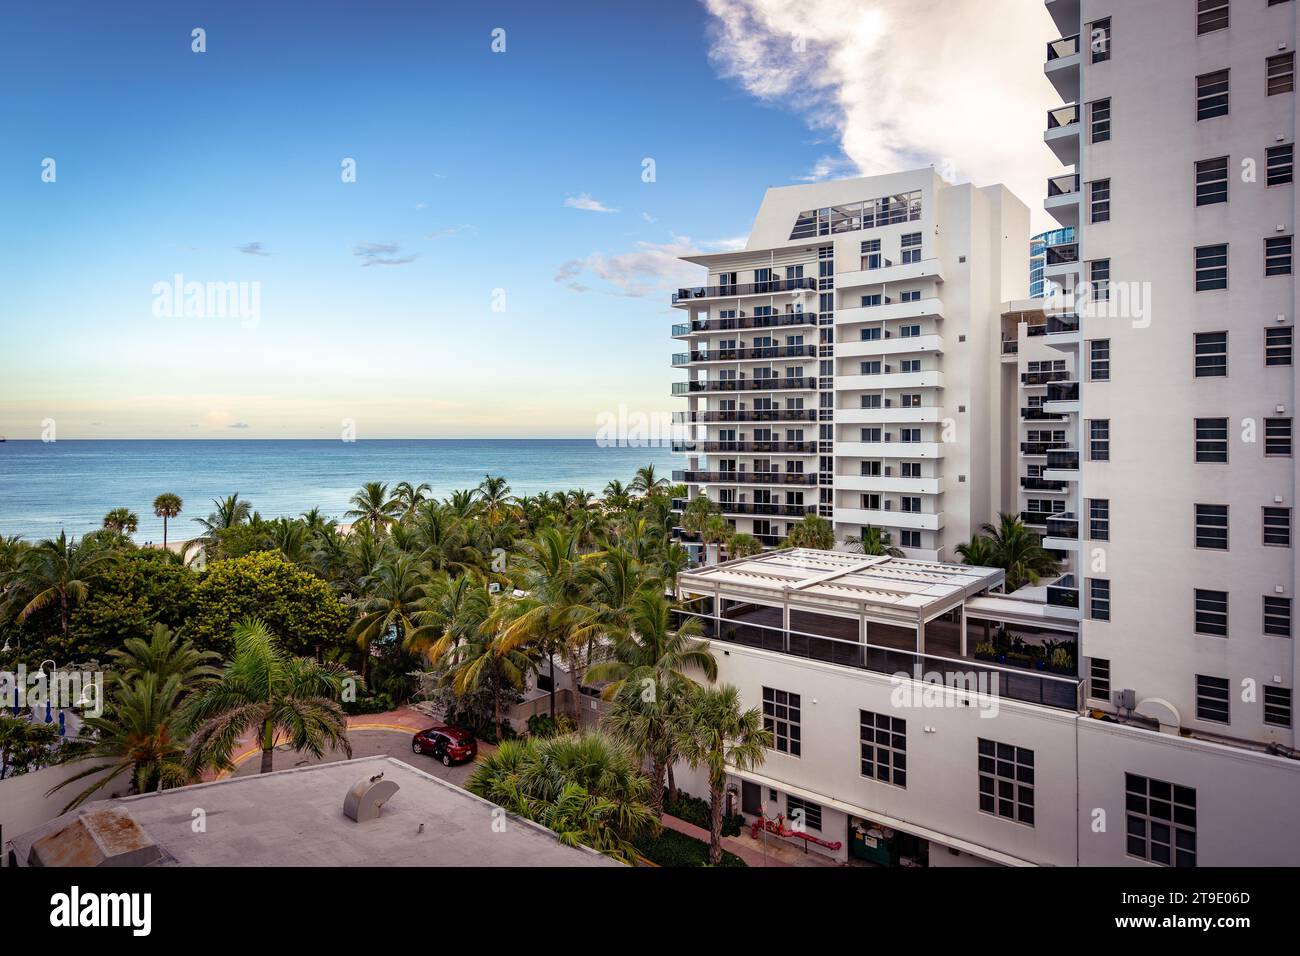 Miami Beach, Floride, États-Unis - vue sur l'océan depuis un hôtel Banque D'Images